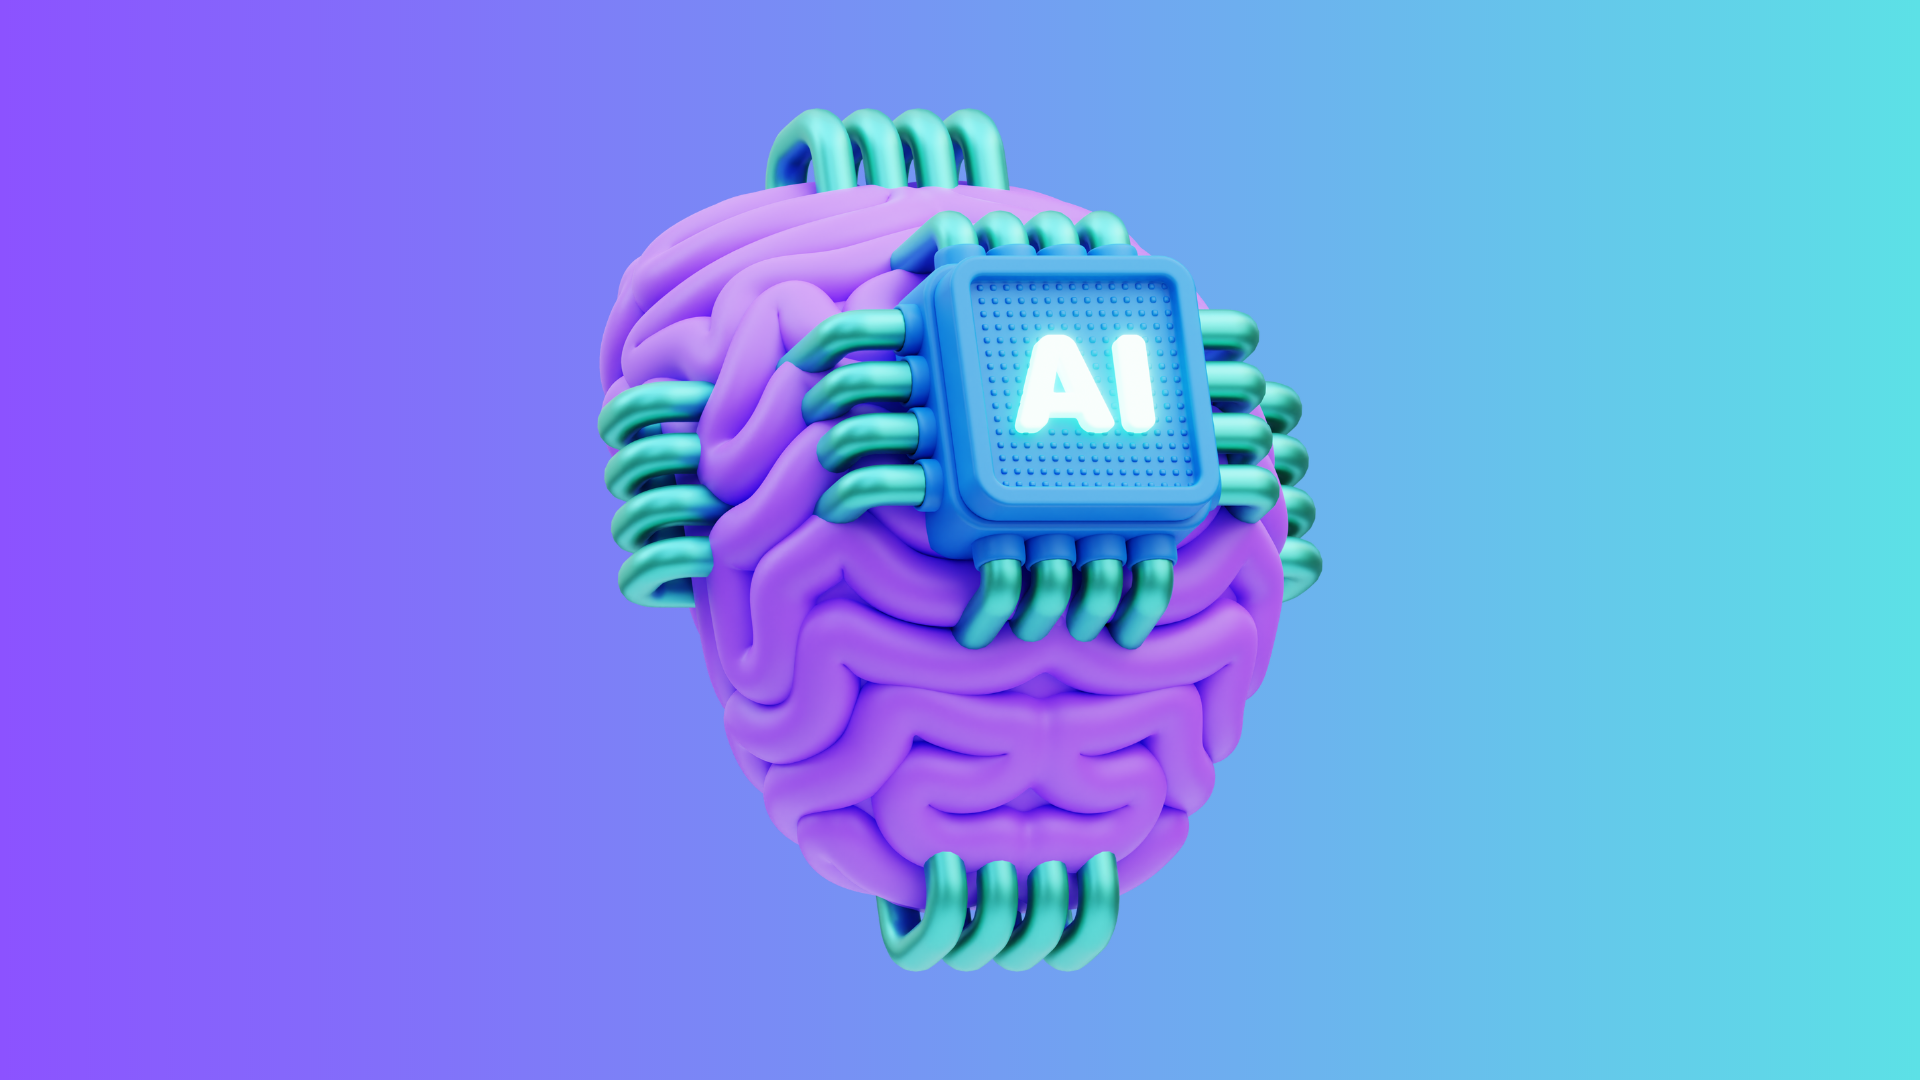 L'intelligence artificielle (IA) a rapidement émergé comme une force perturbatrice dans de nombreux domaines, transformant la façon dont nous travaillons et interagissons avec les technologies.